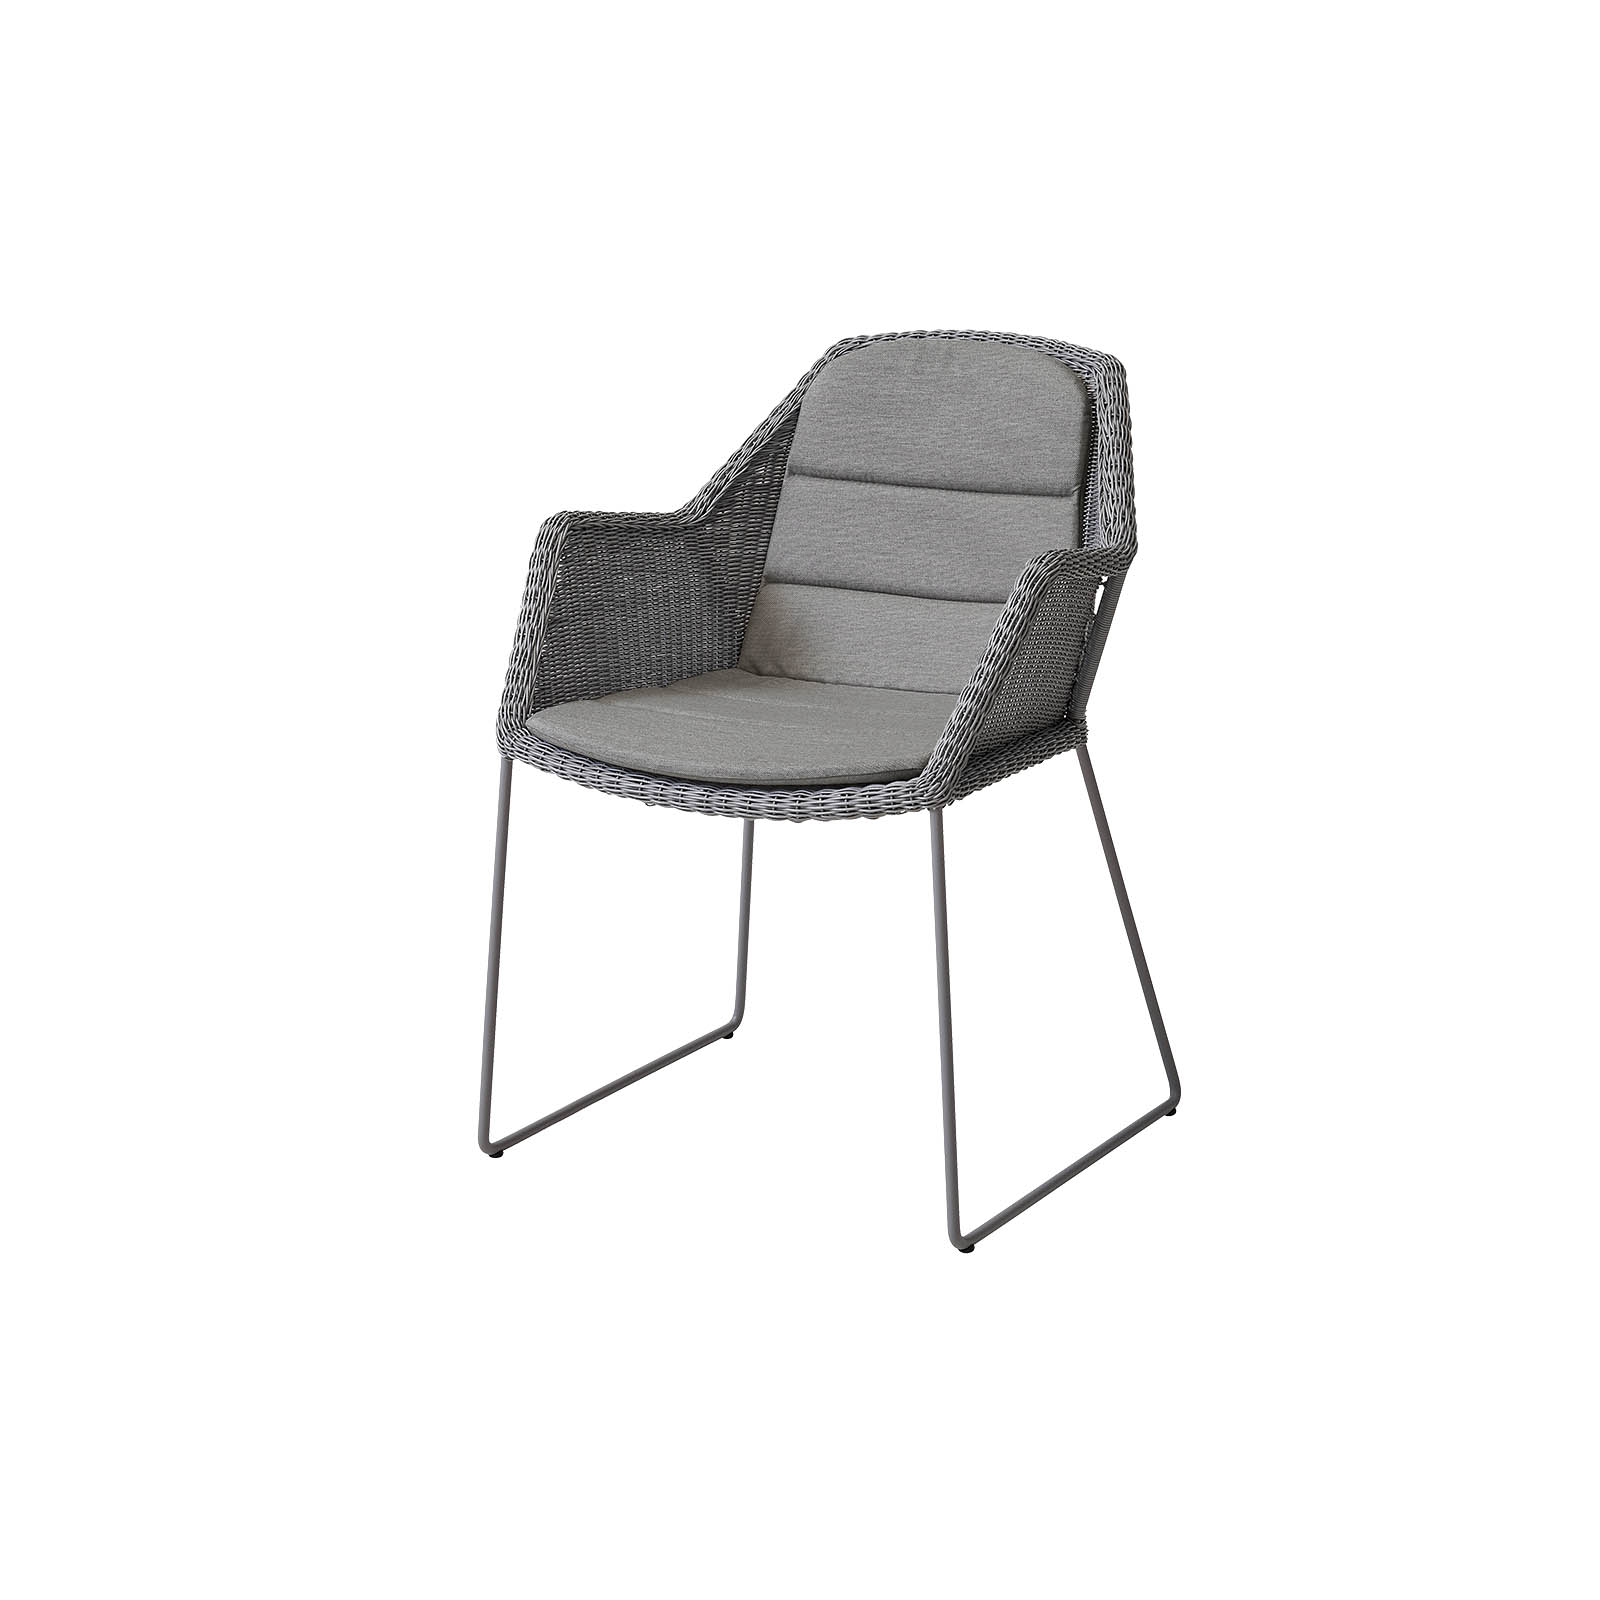 Breeze Stuhl aus Cane-line Weave in Light Grey mit Kissen aus Cane-line Natté in Taupe